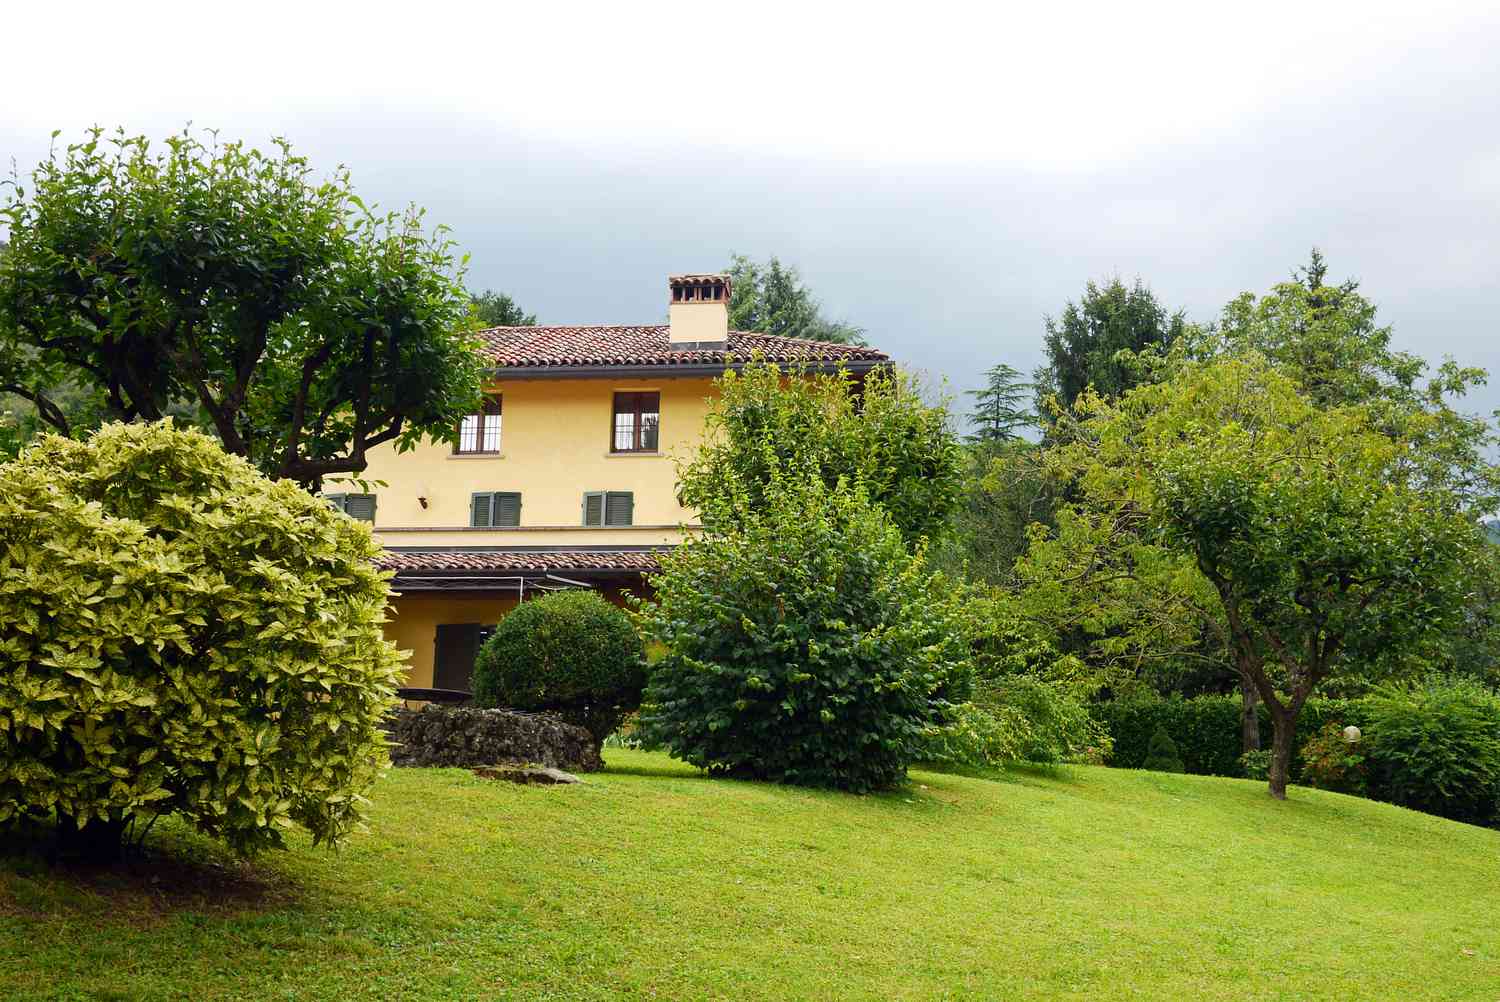 Arbustos y árboles dan intimidad a esta casa italiana.